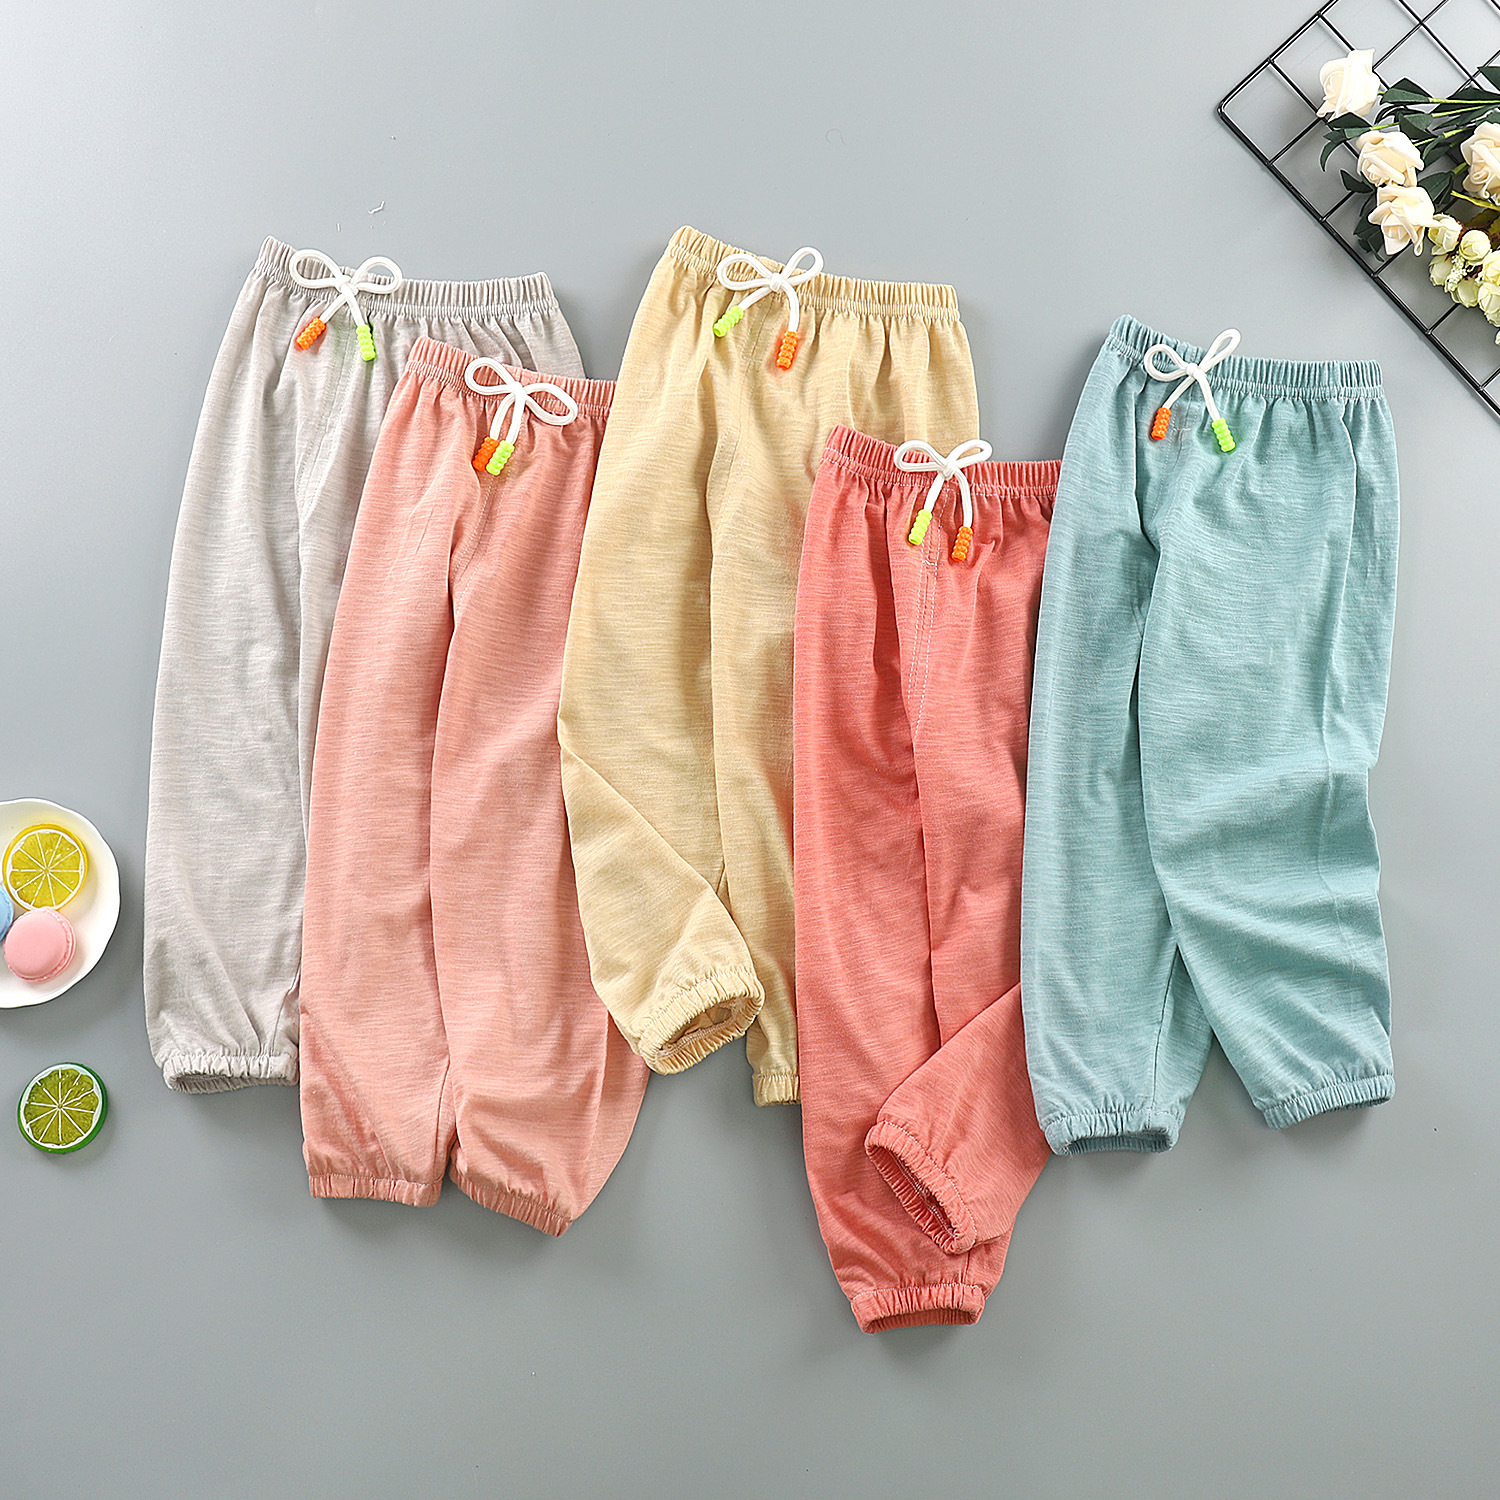 一件代销夏季新款儿童竹节棉防蚊裤子1-6岁男女宝宝5家居休闲睡裤